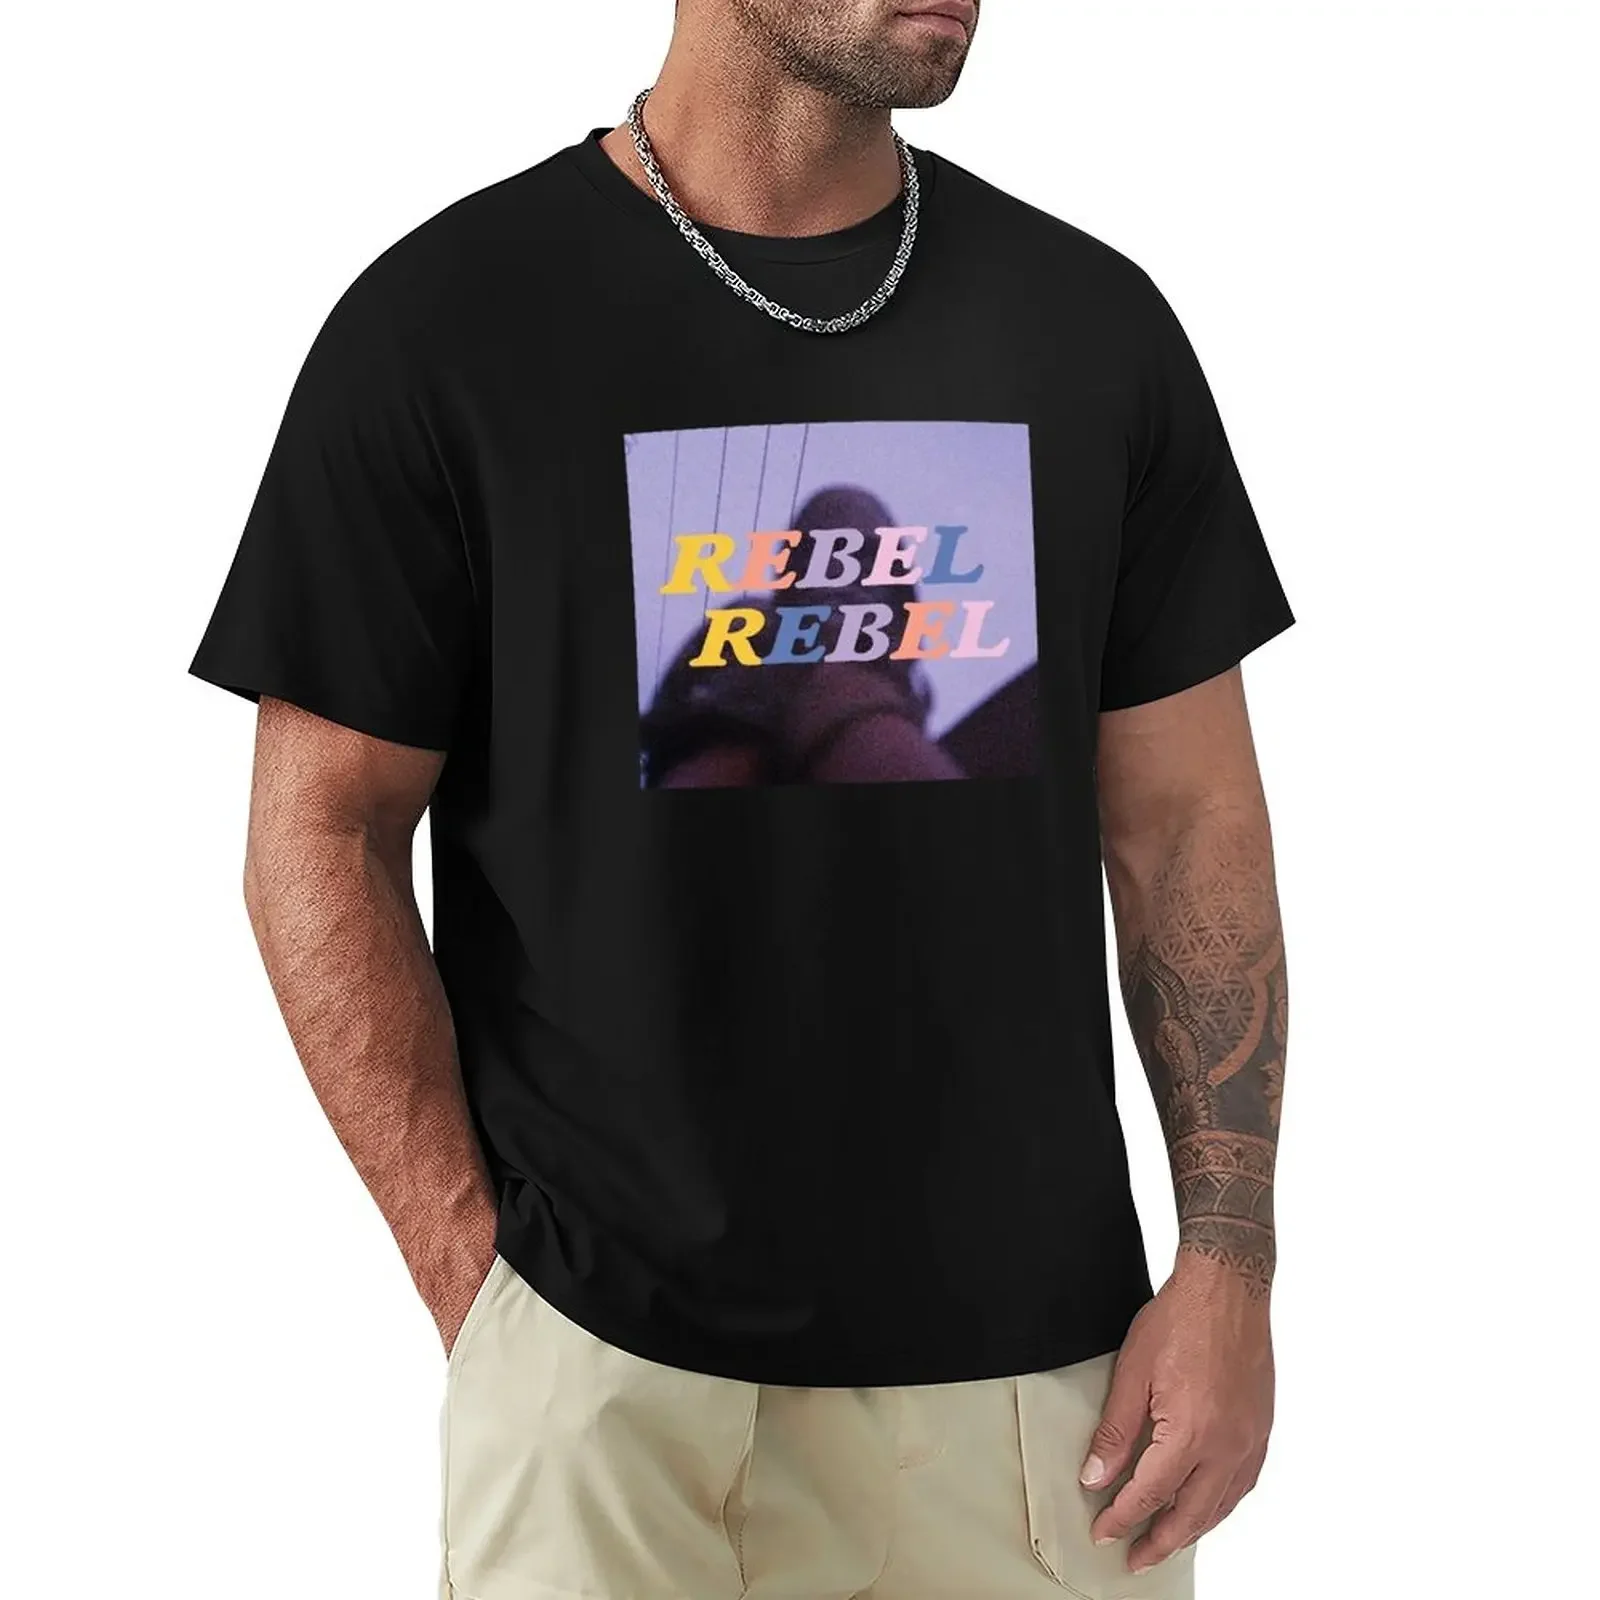 

Rebel футболка повстанца быстросохнущая Футболка с принтом животных для мальчиков, милая одежда для мальчика, Мужская футболка